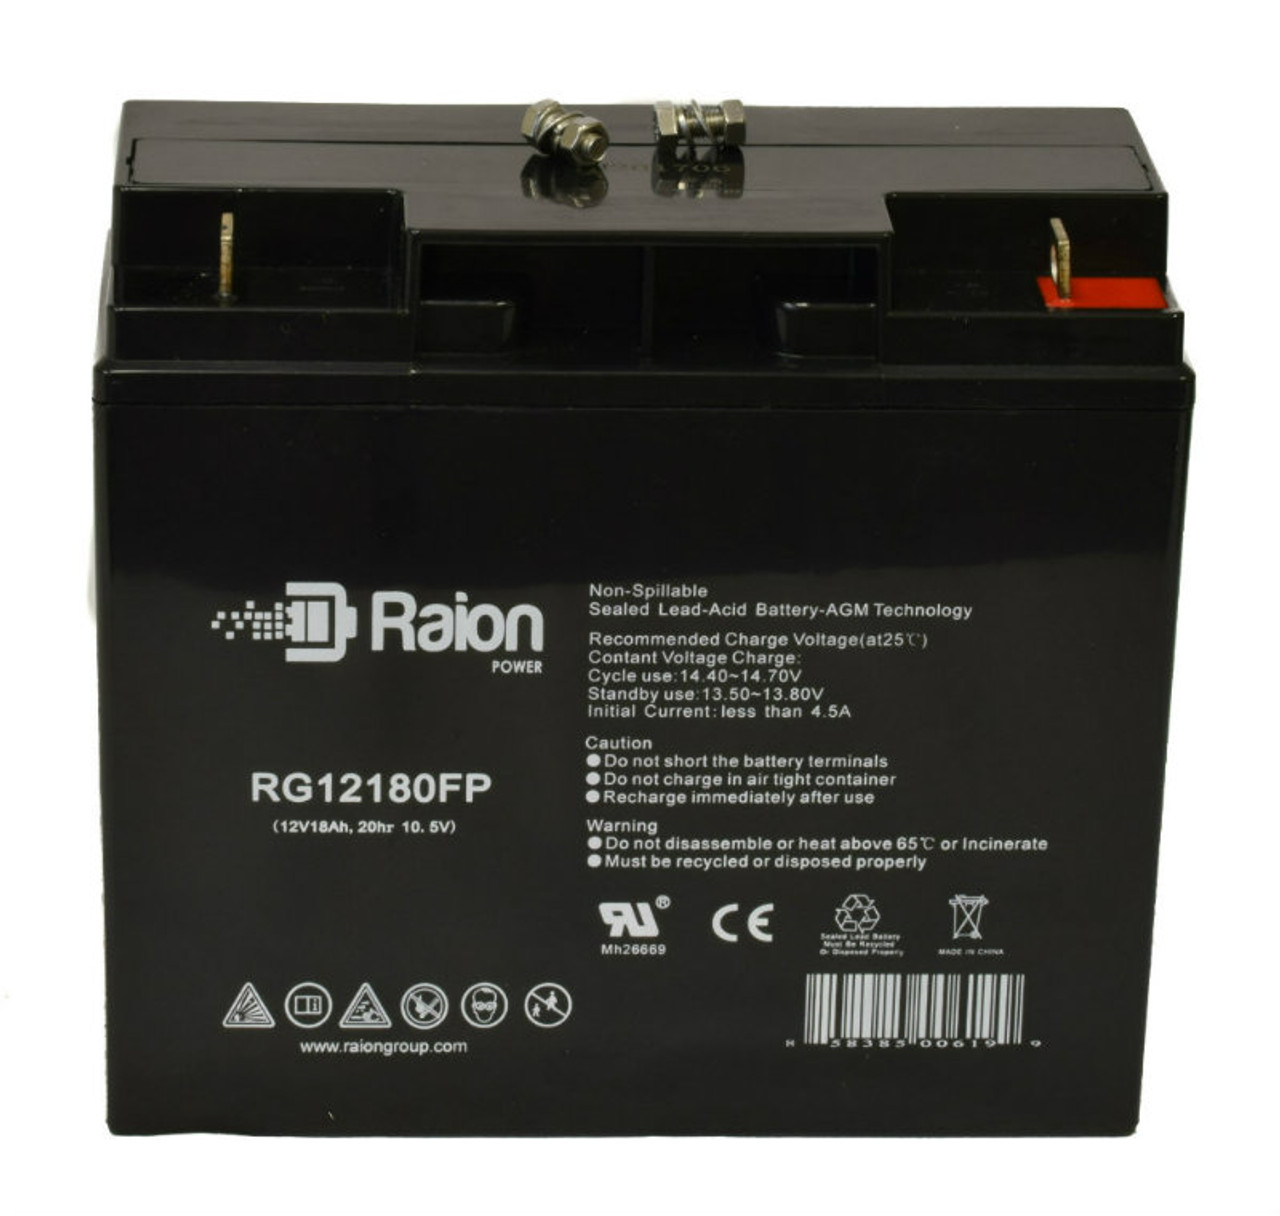 Raion Power RG12180FP 12V 18Ah Lead Acid Battery for Ultra Tech IM-12180